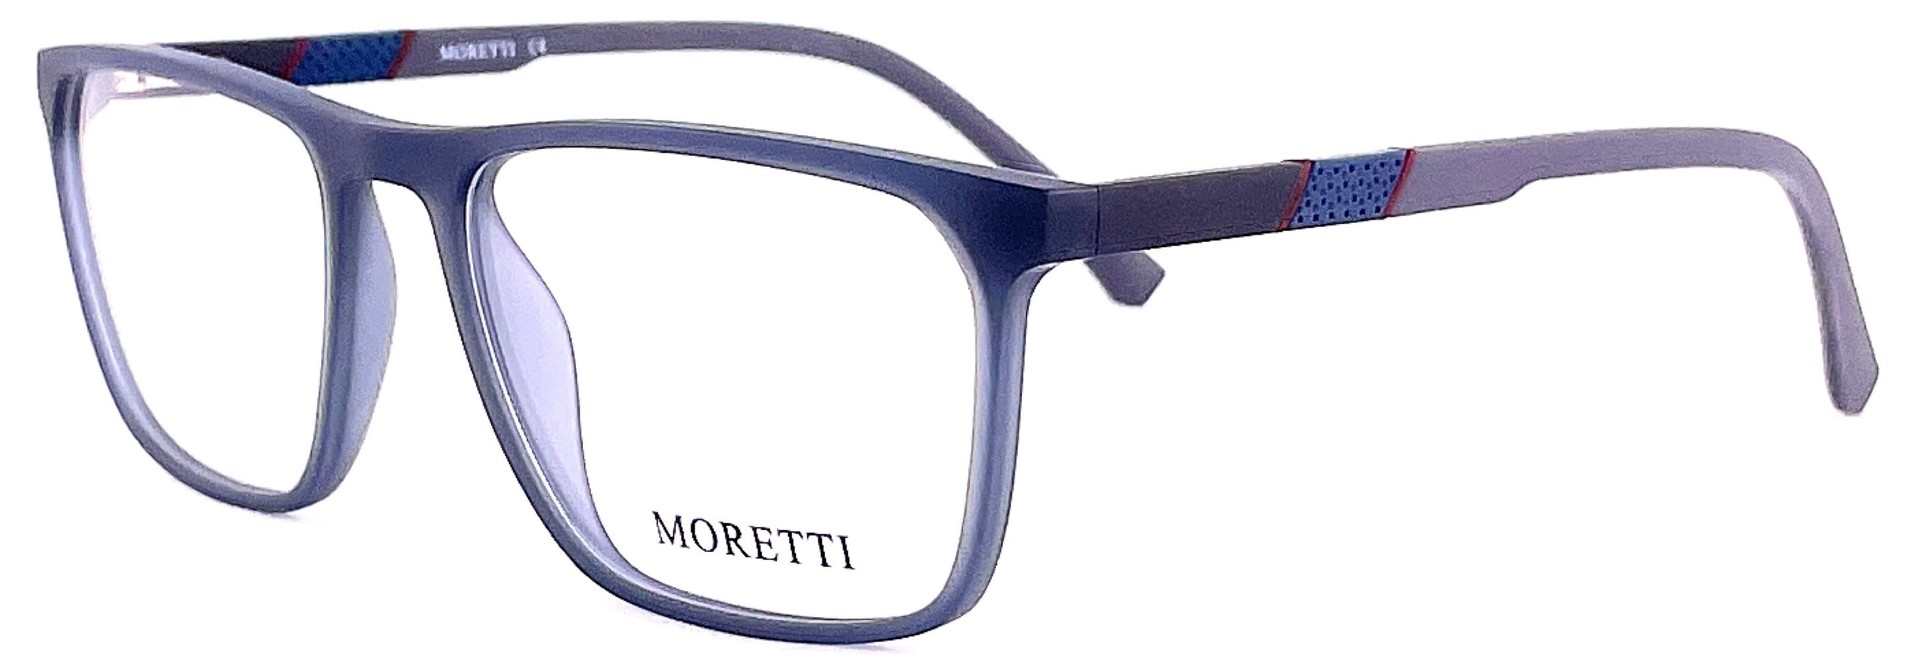 Moretti MF01-01 C.07 2